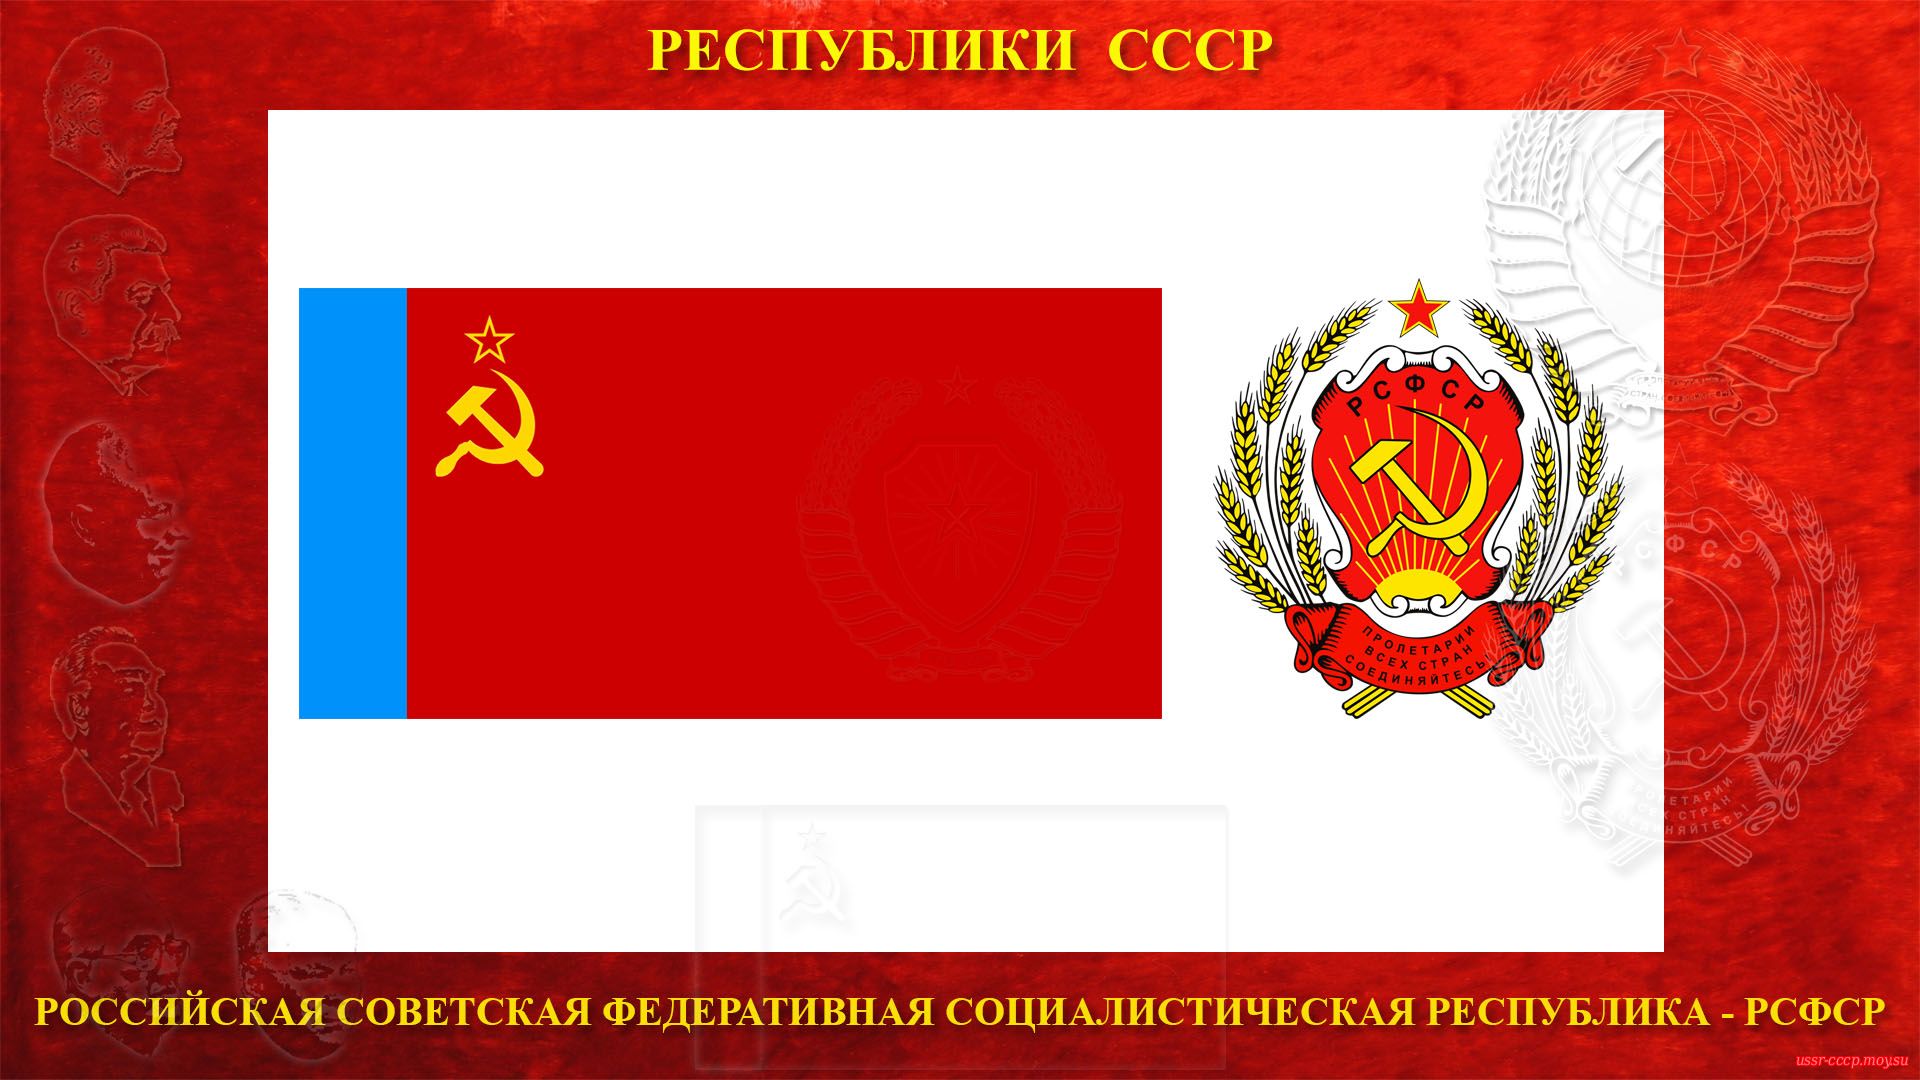 РСФСР — Российская Советская Федеративная Социалистическая Республика (повествование)